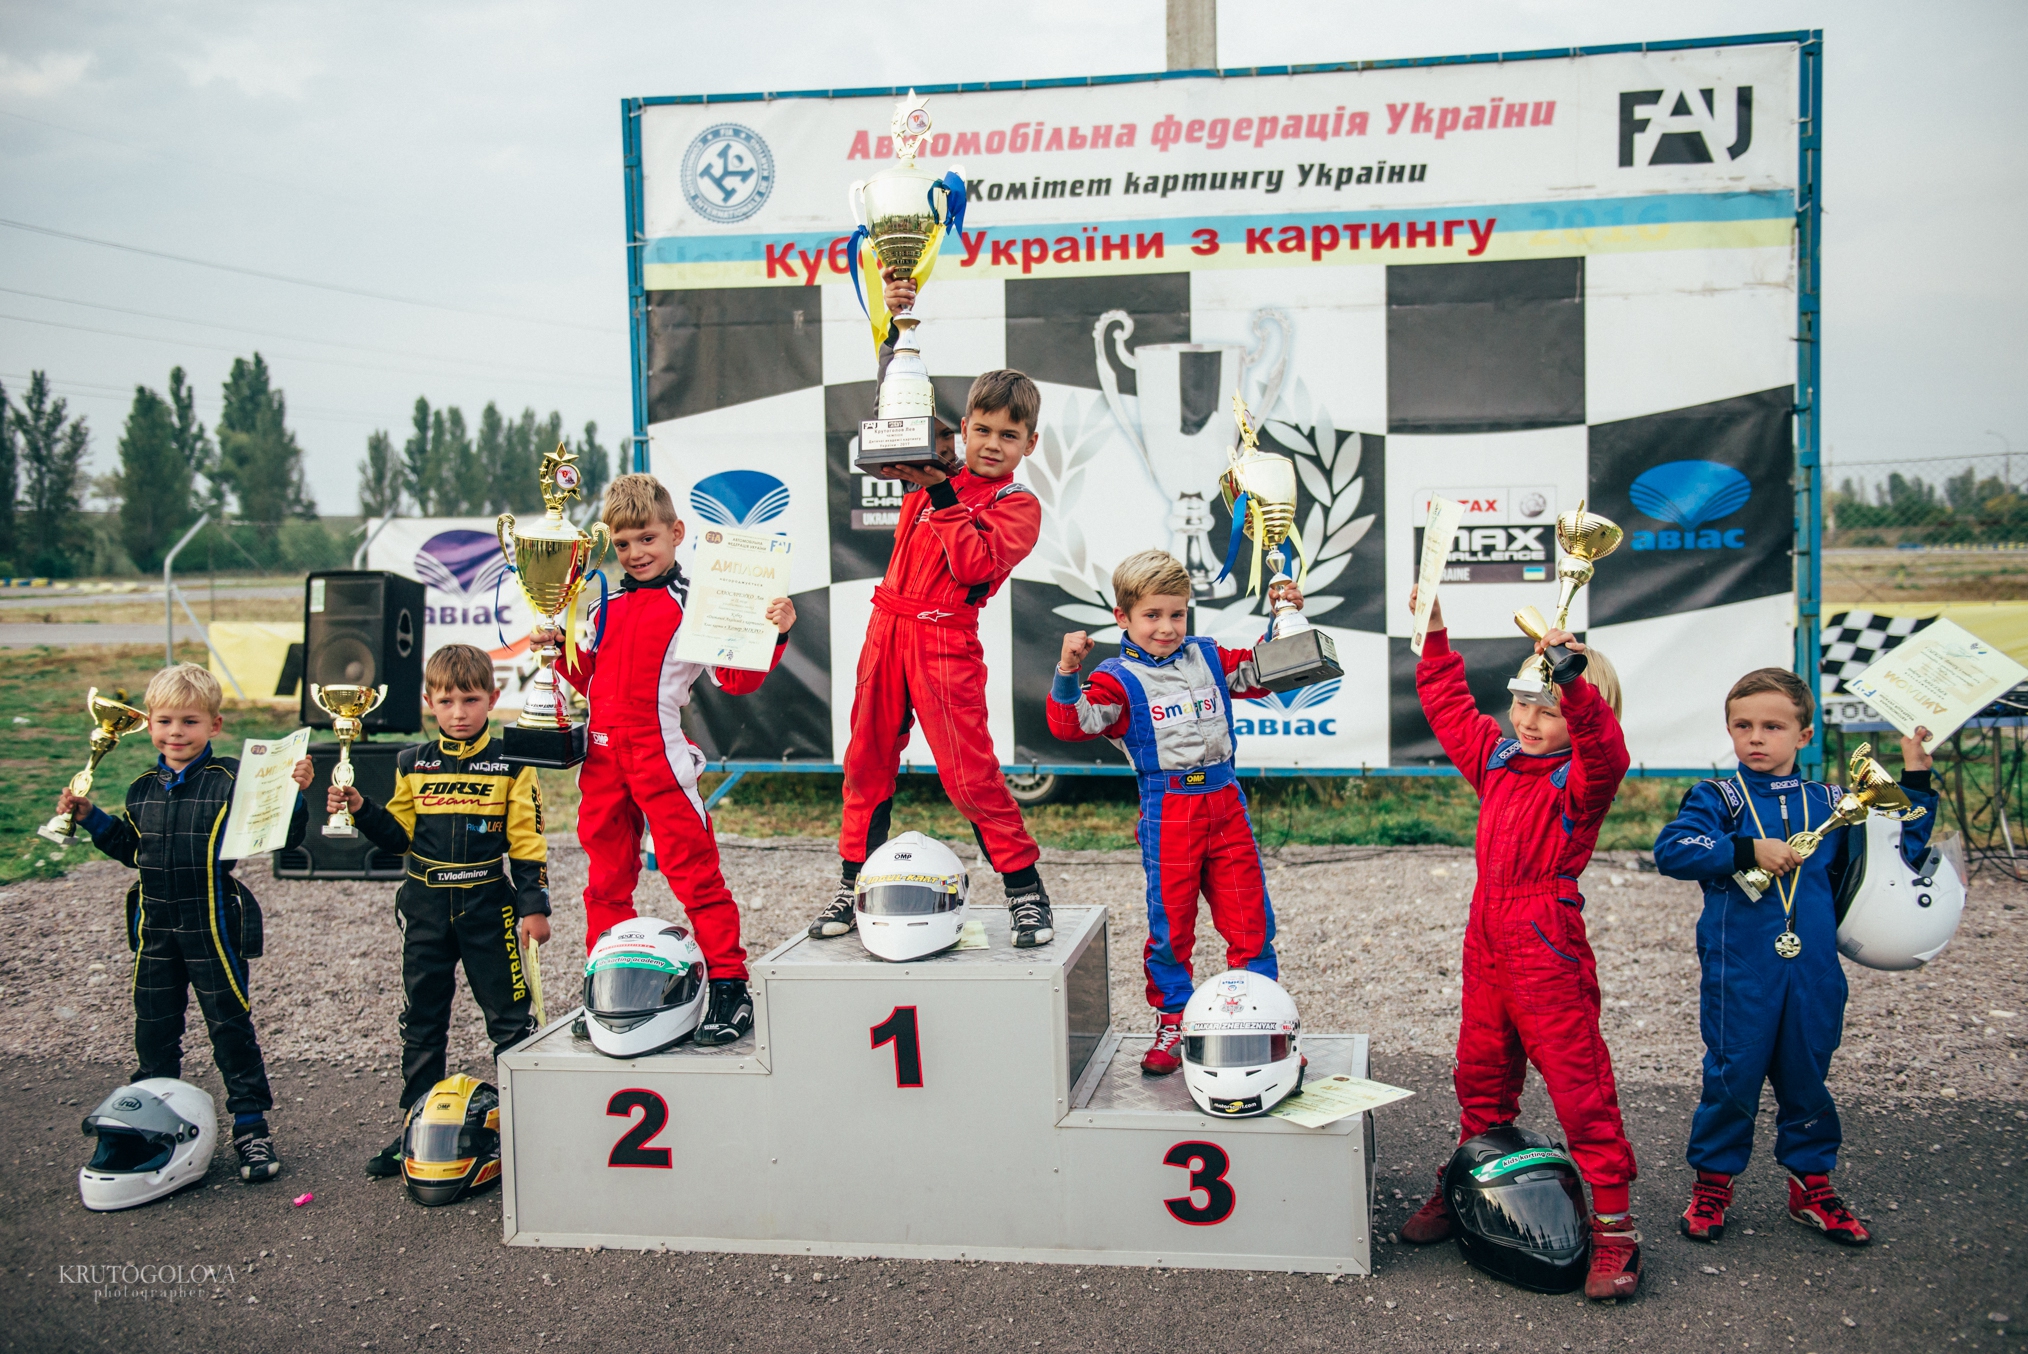 Сын Егора Крутоголова Лев стал Чемпионом Украины по гонками на картинге - фото 80051